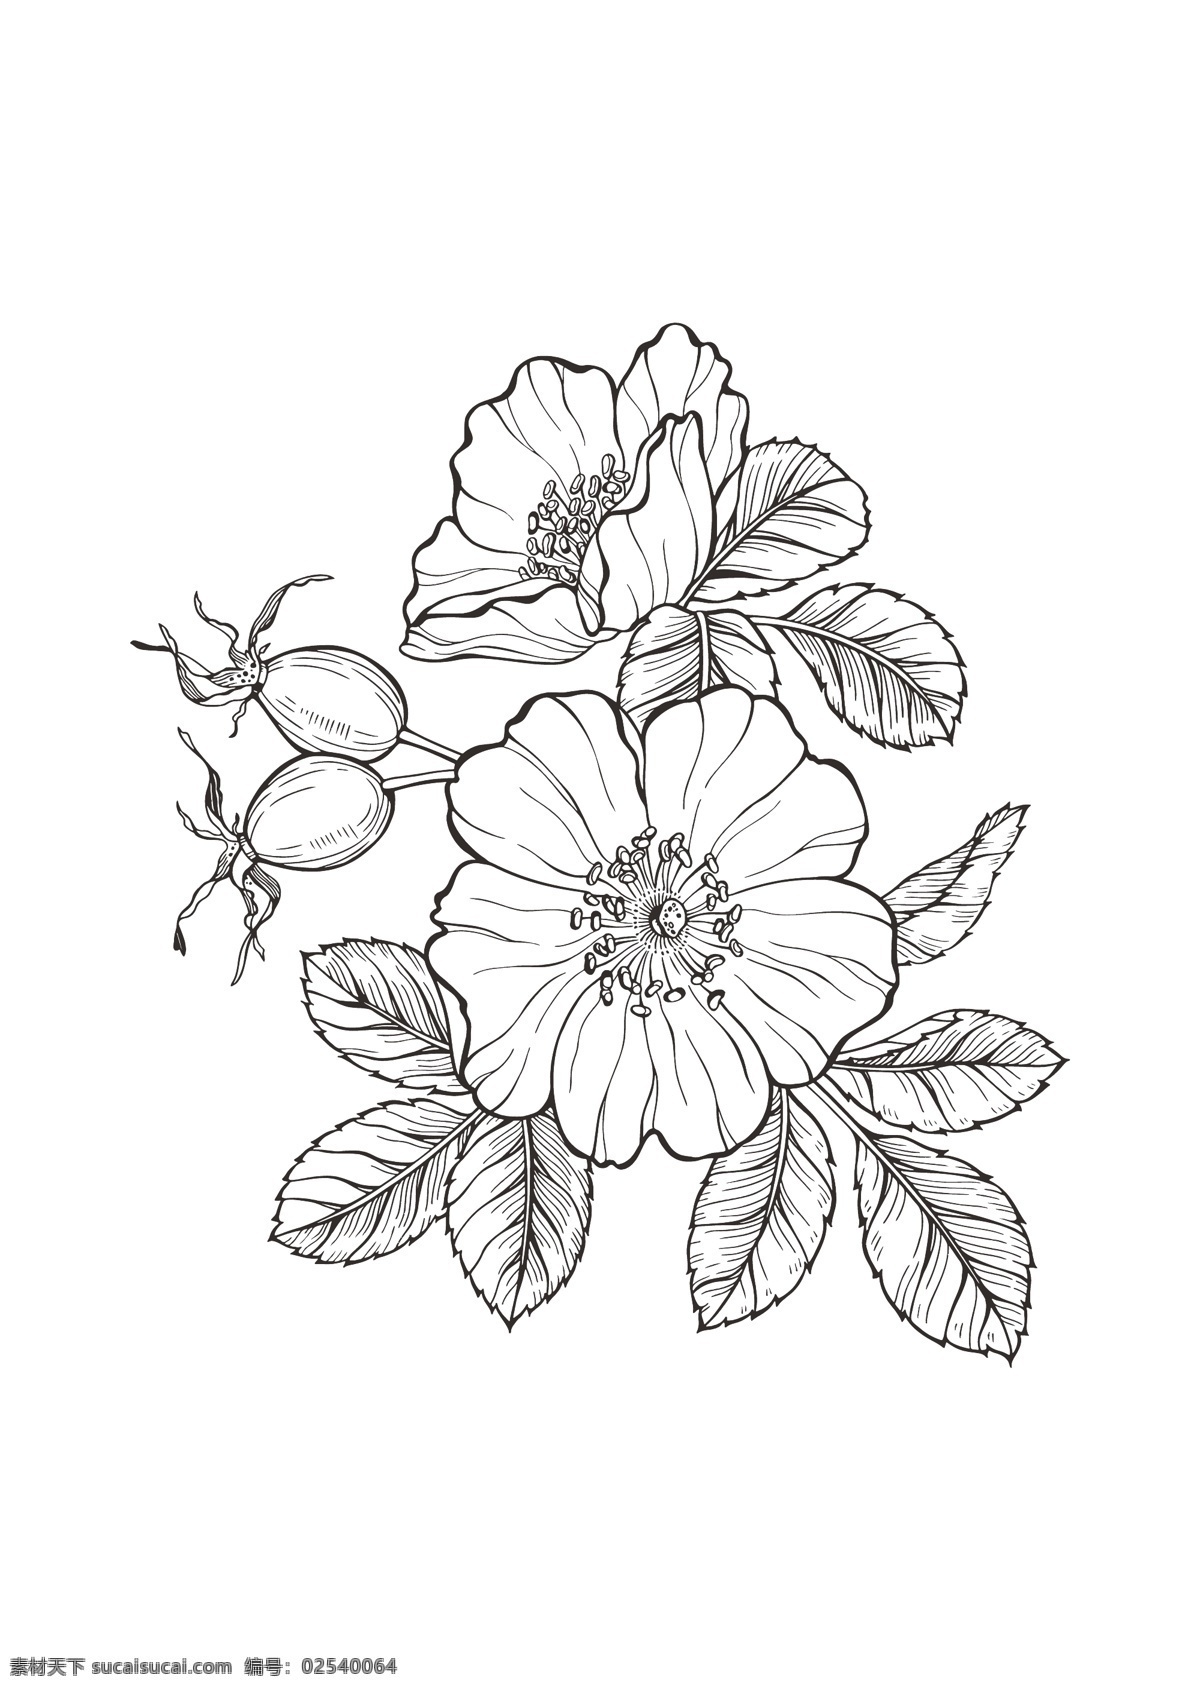 线描 野蔷薇 花卉图片 白描 线稿 矢量花卉 花卉白描 蔷薇花 包装花卉素材 花卉设计素材 包装设计